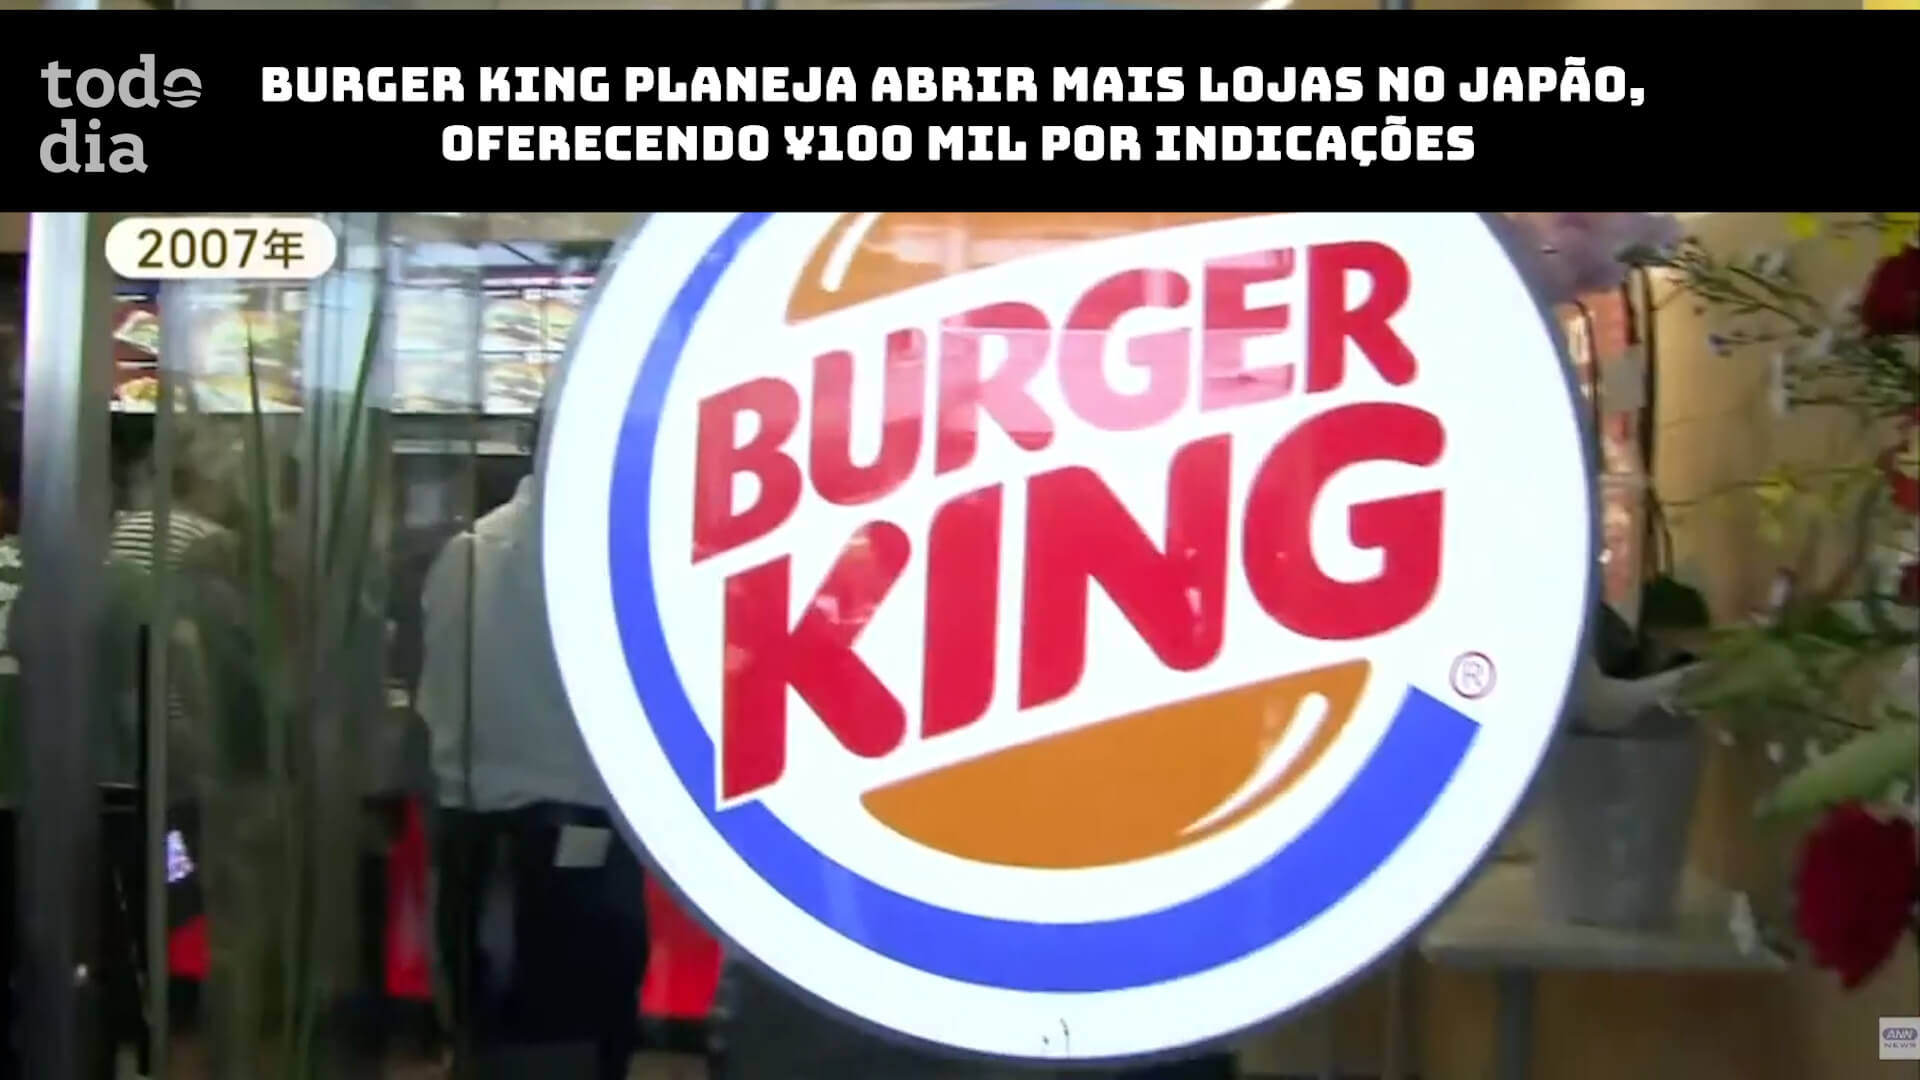 Burger King planeja abrir mais lojas no Japão, oferecendo ¥100 mil por indicações